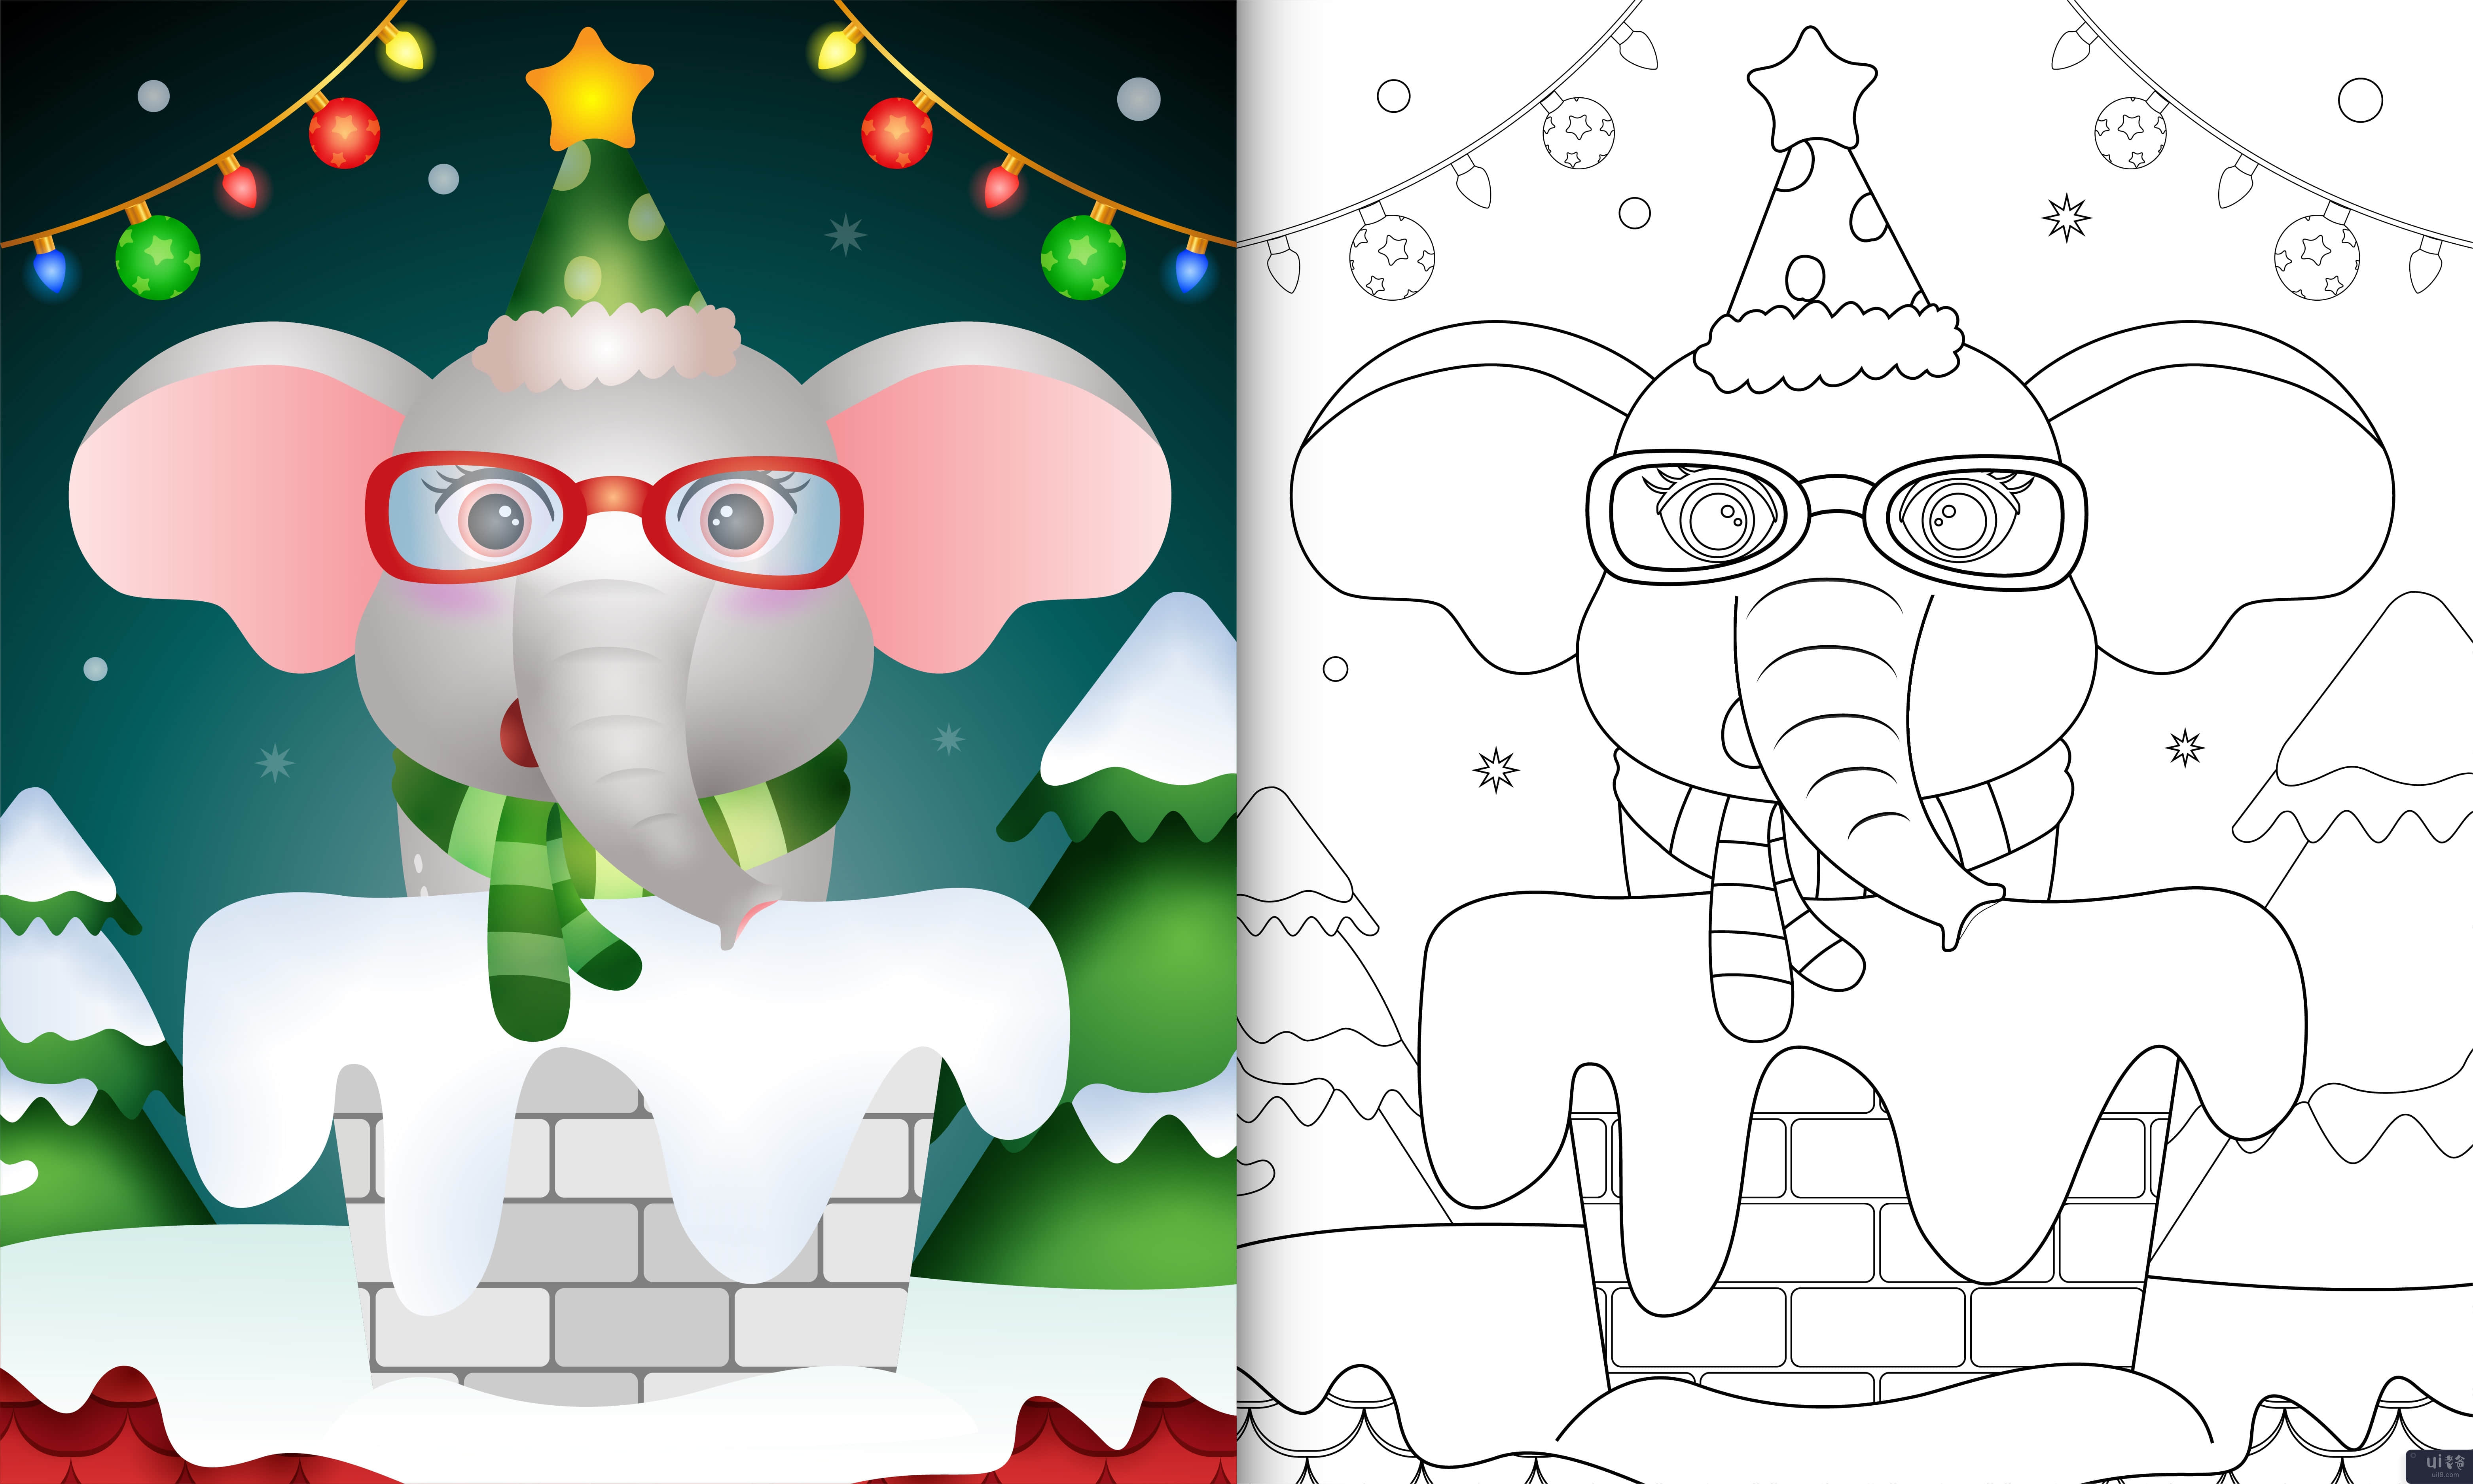 用帽子和围巾在烟囱里为可爱大象的孩子涂色书(coloring book for kids with a cute elephant using hat and scarf in chimney)插图2